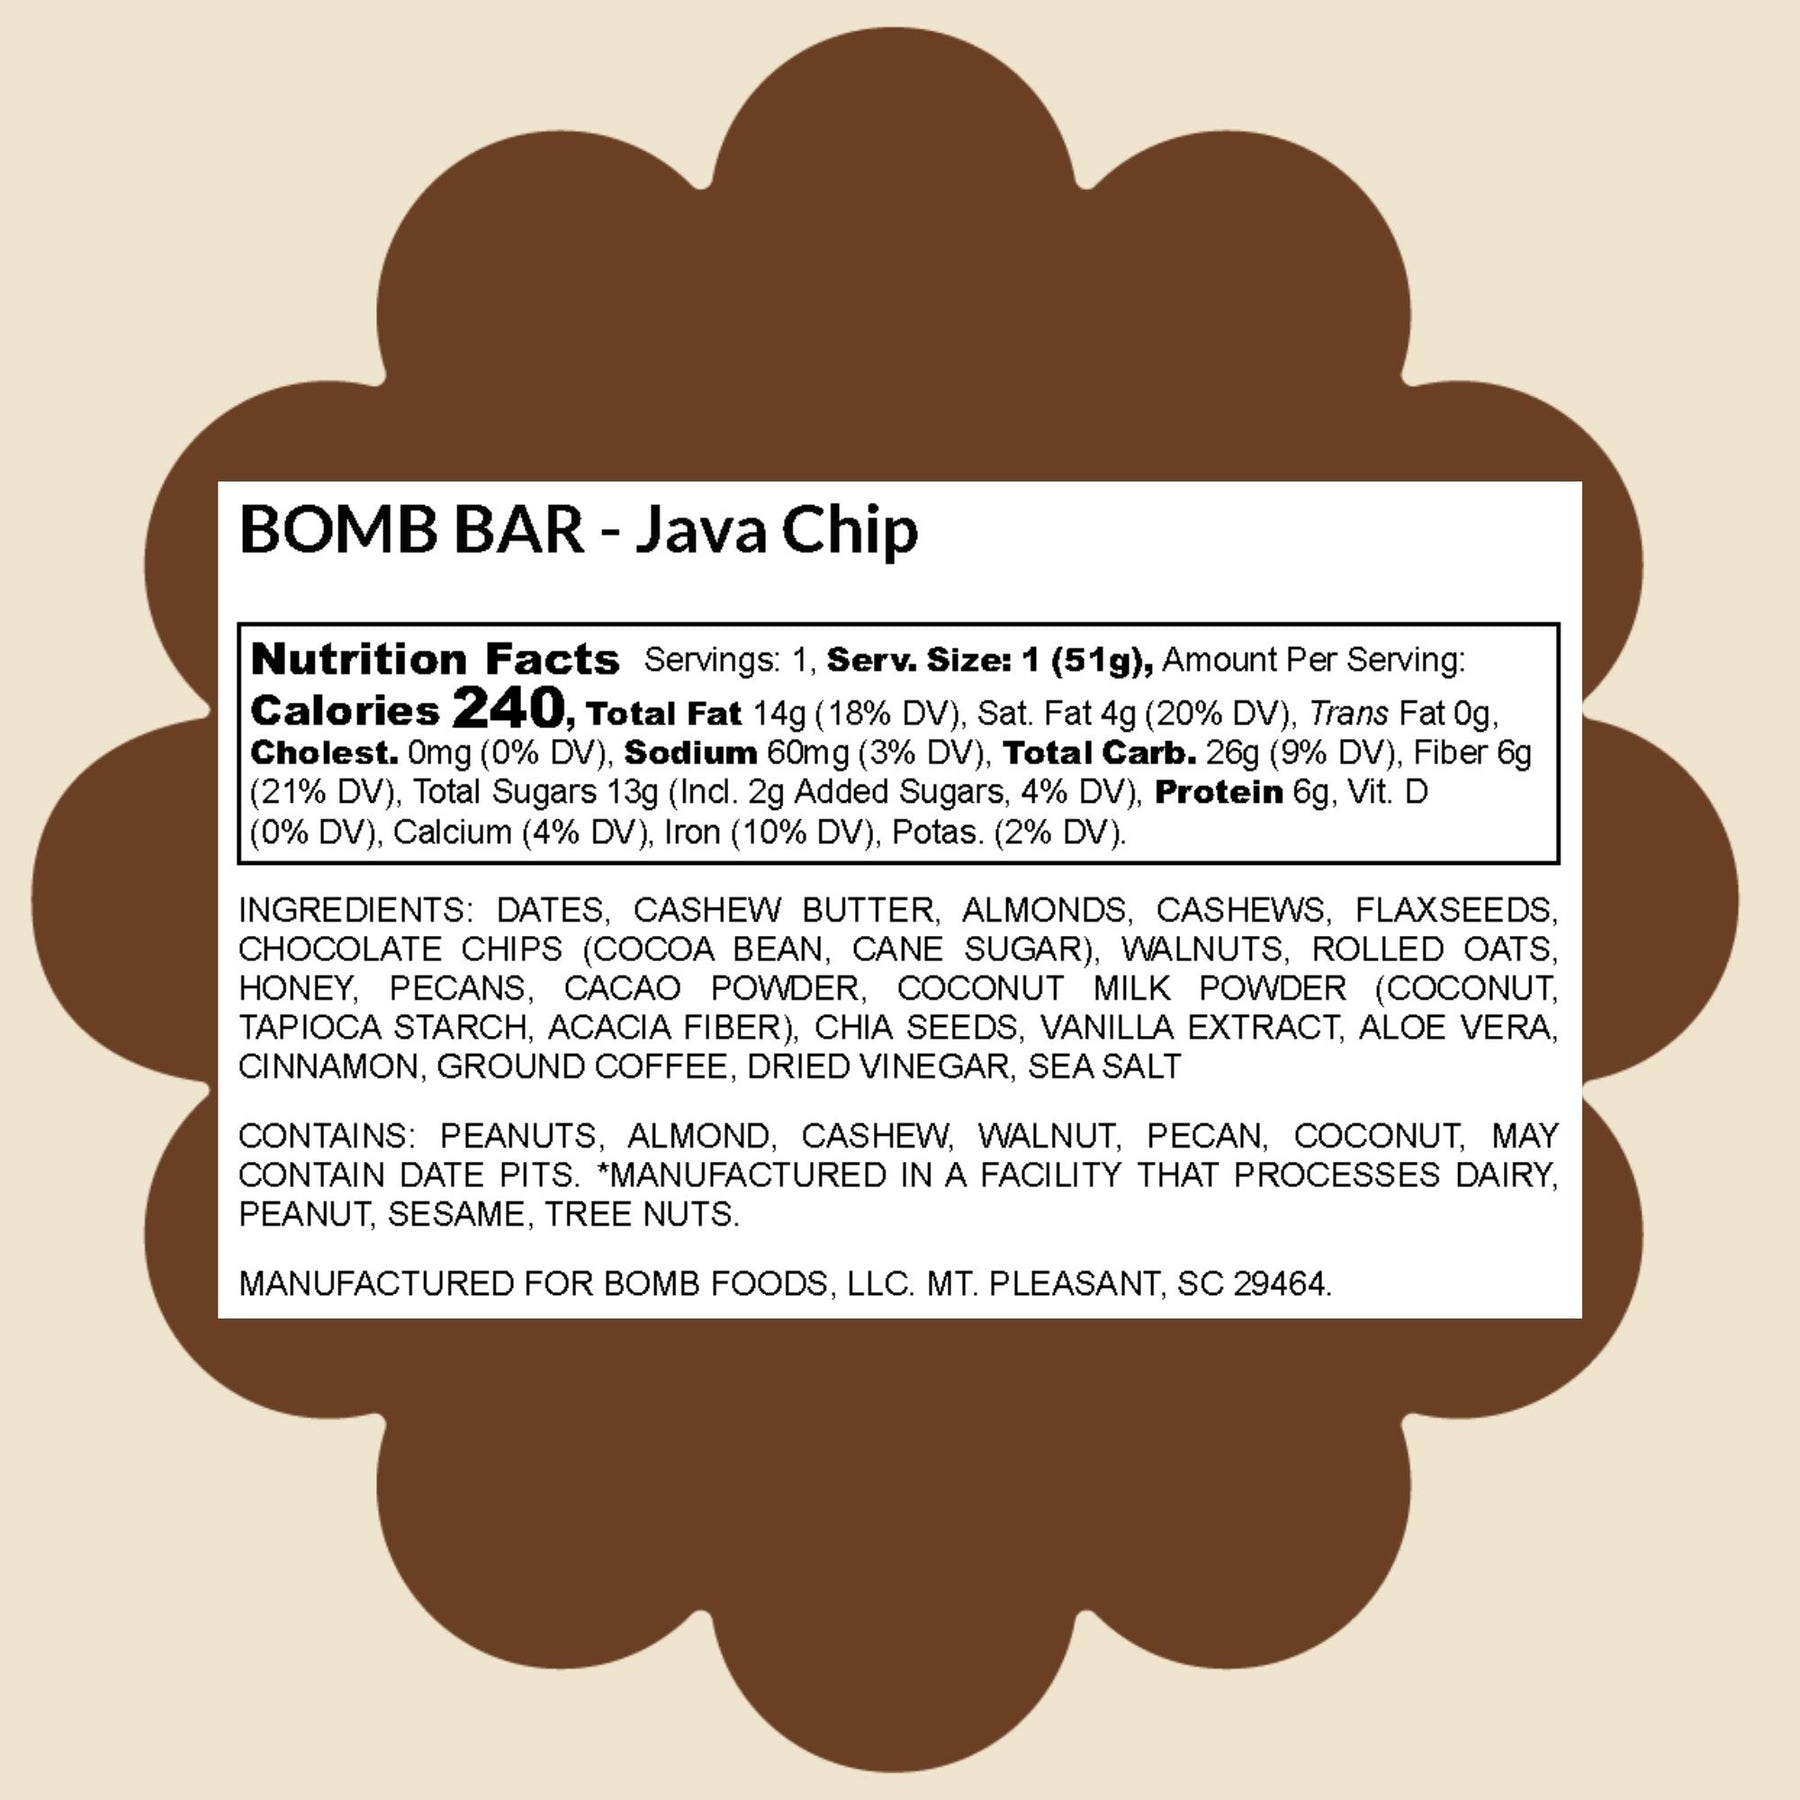 Java Chip Blender Bombs Bomb Bar